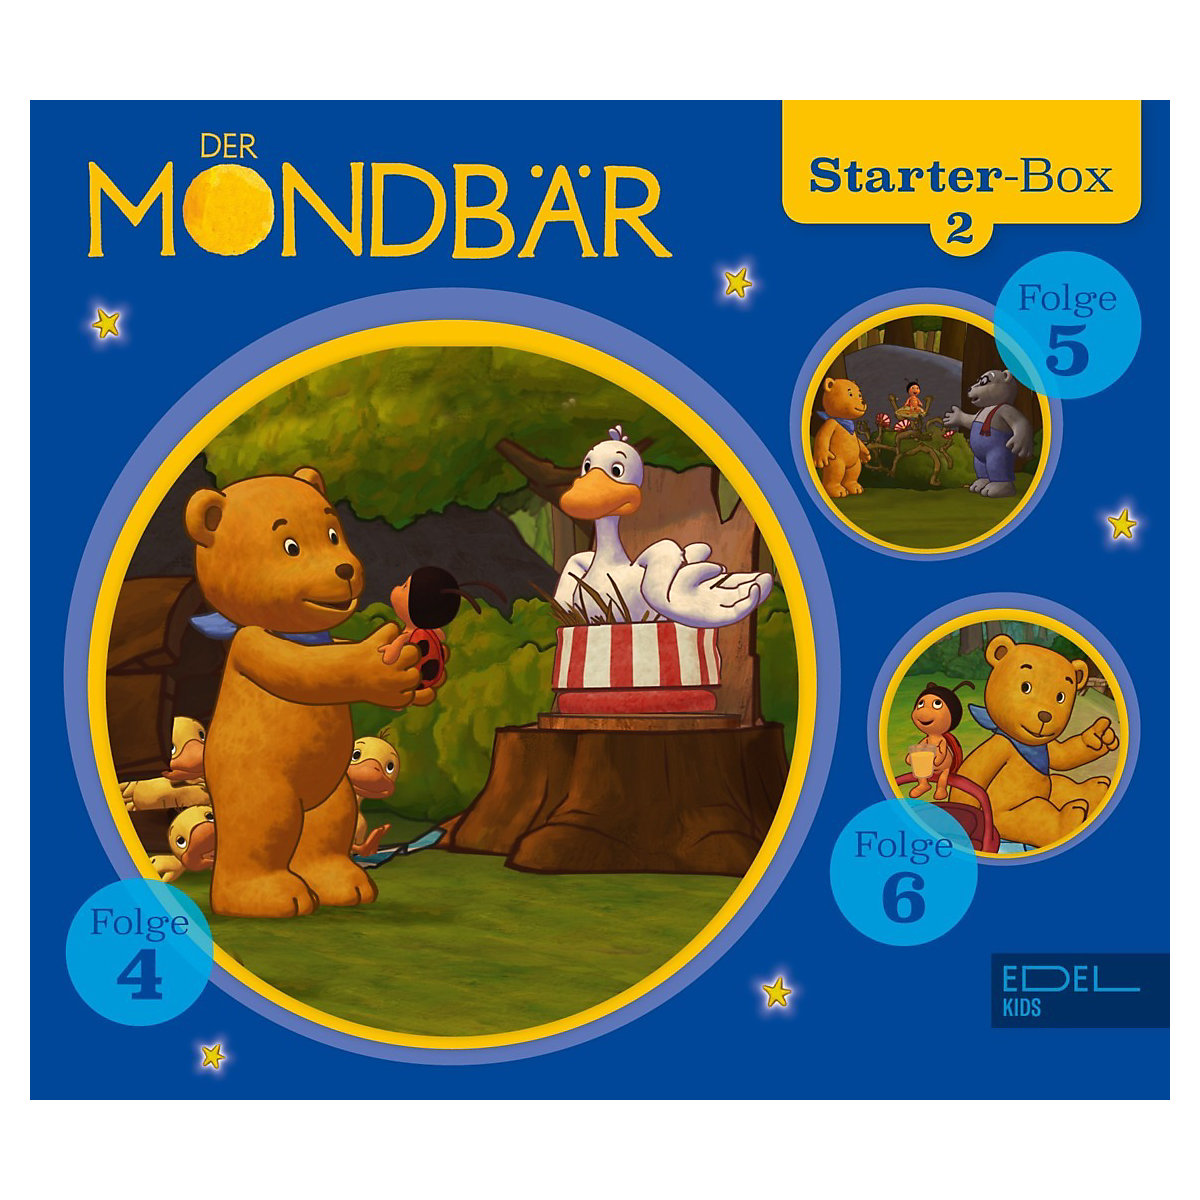 Edel CD Mondbär Starter-Box 2 Folge 4-6 (3 CDs)